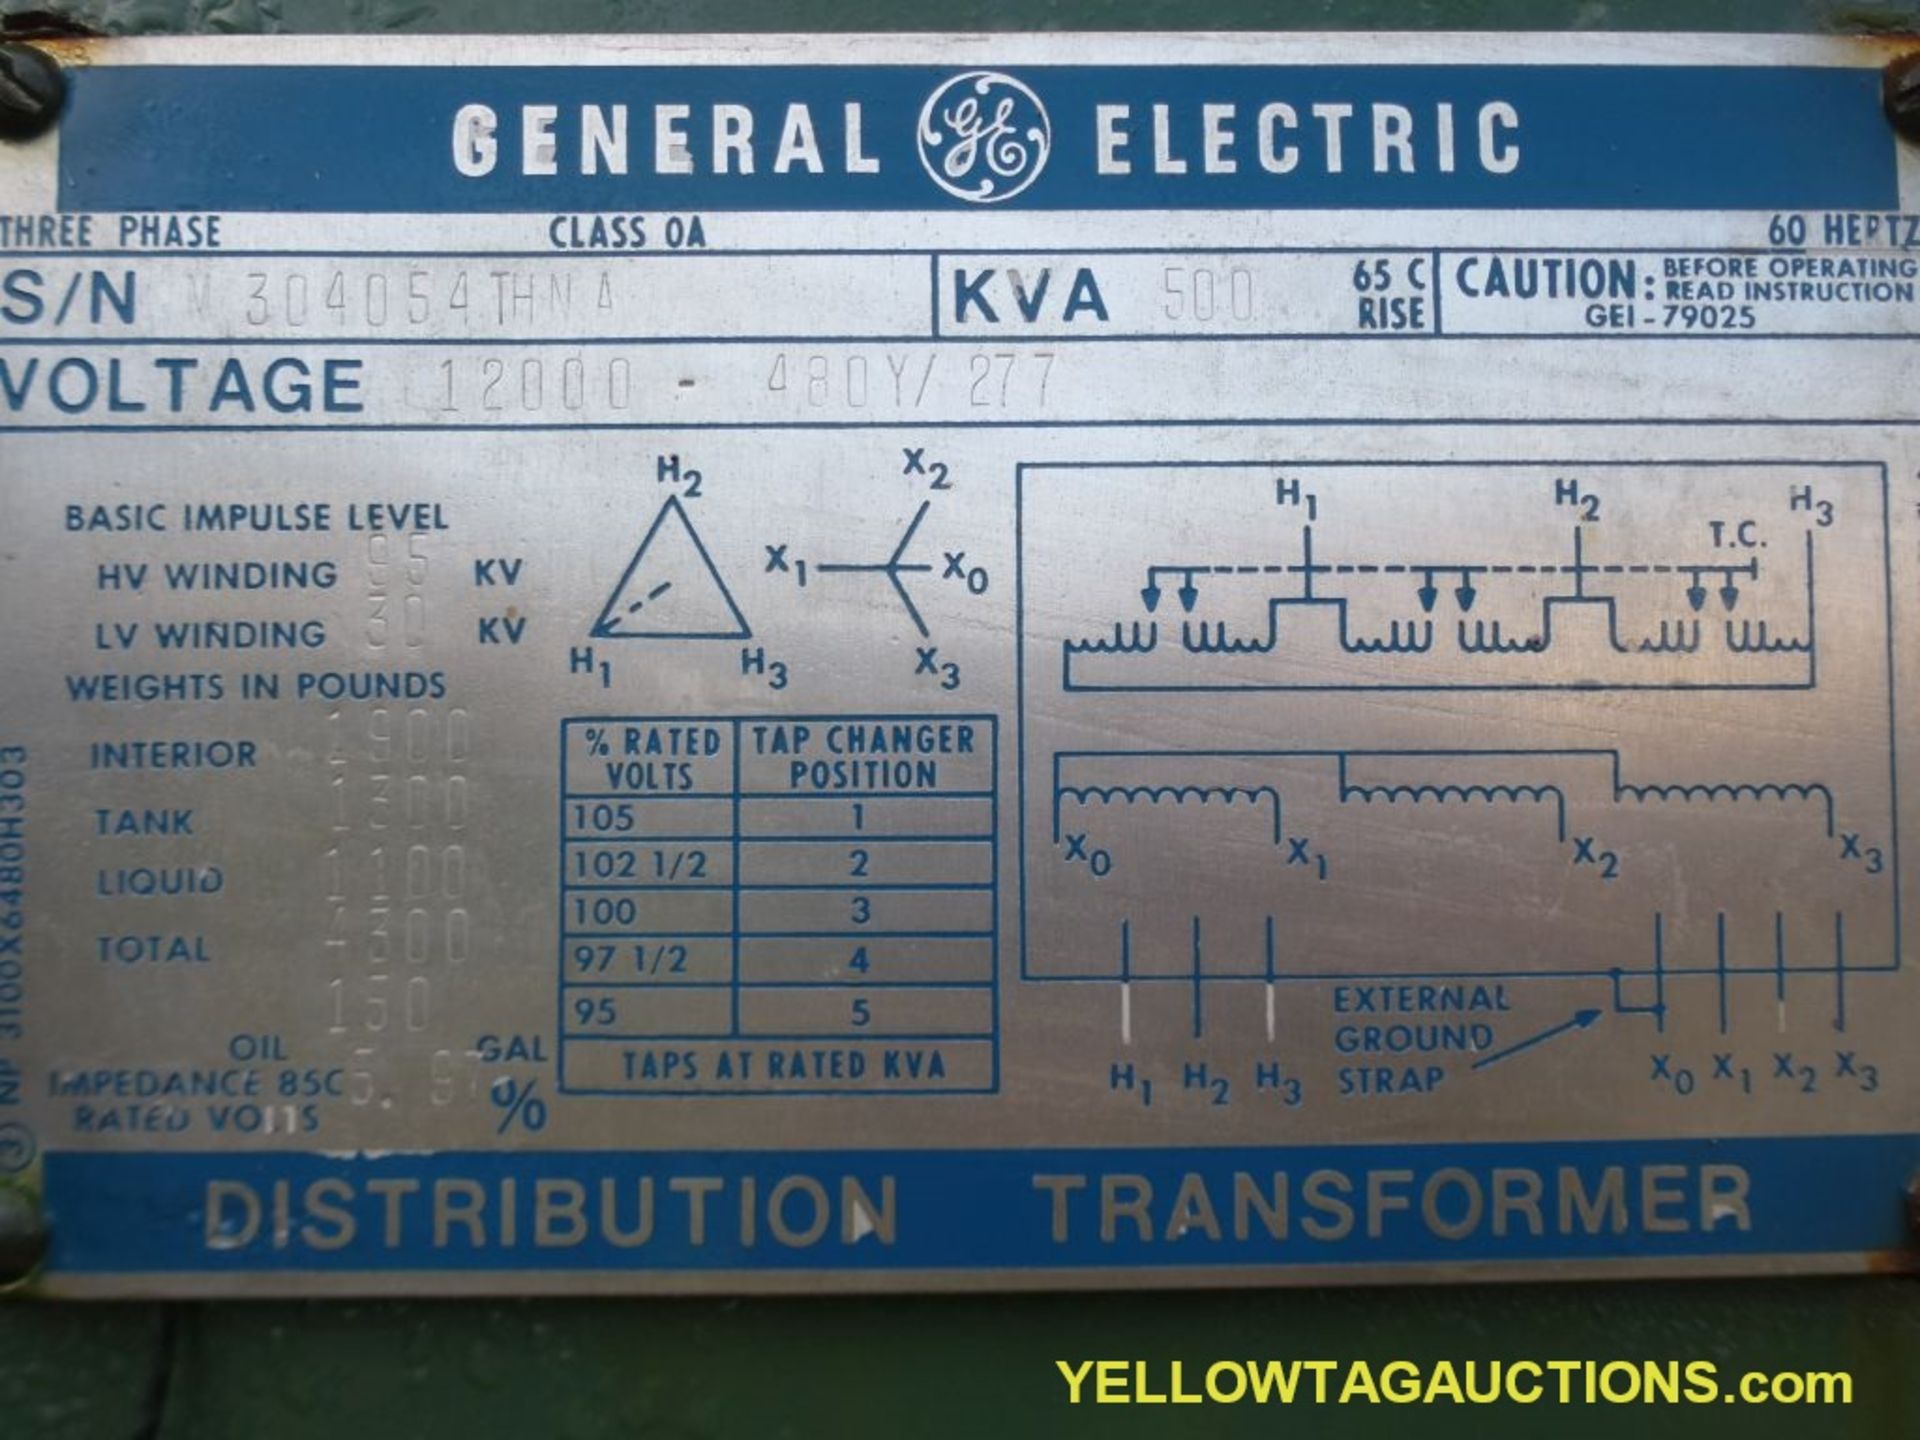 GE 500 KVA Transformer - 12000-480Y/277V - Image 8 of 8